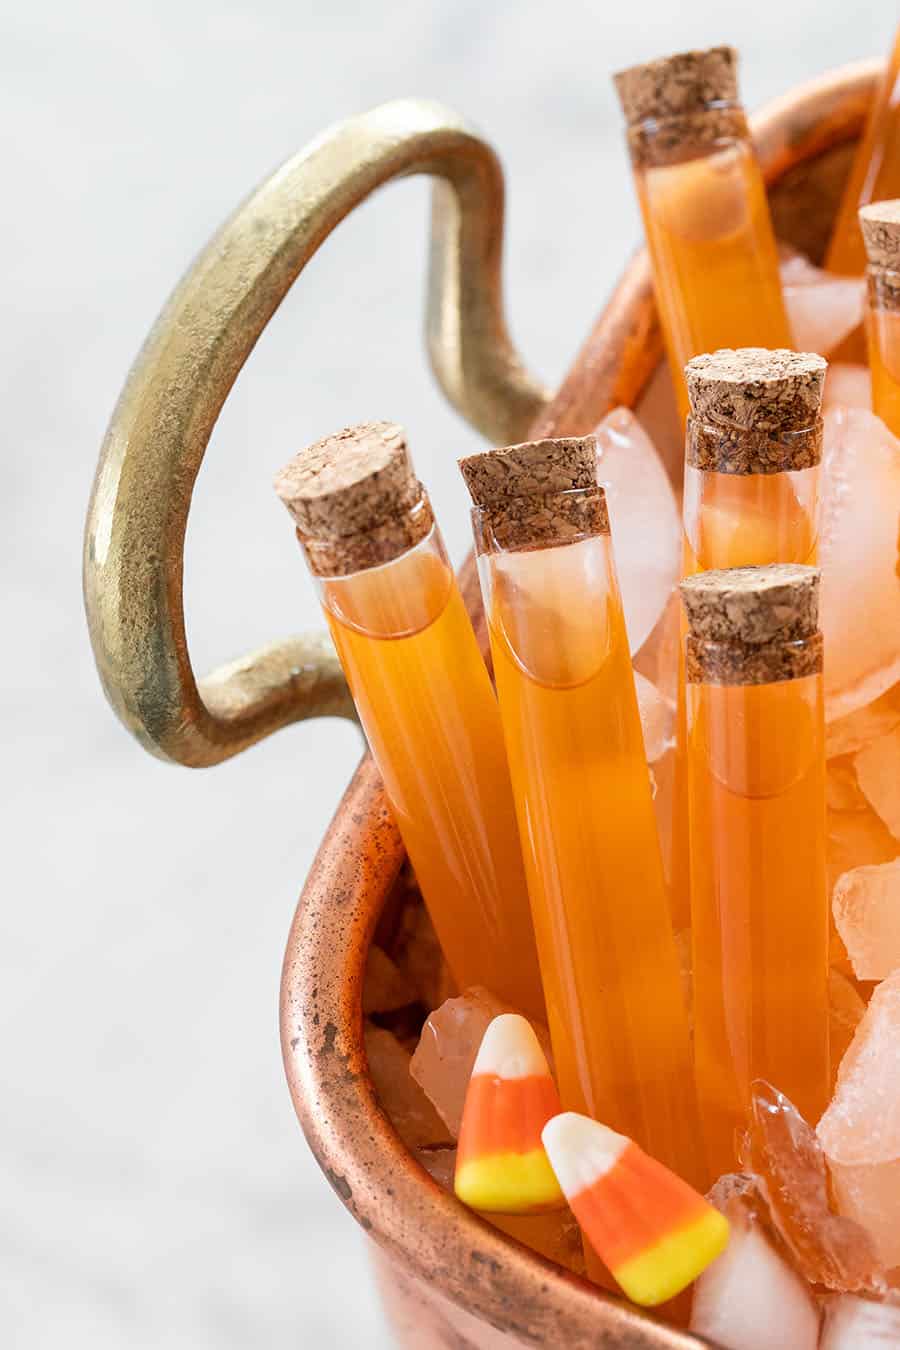 Orange drink inside test tubes with cork lids.